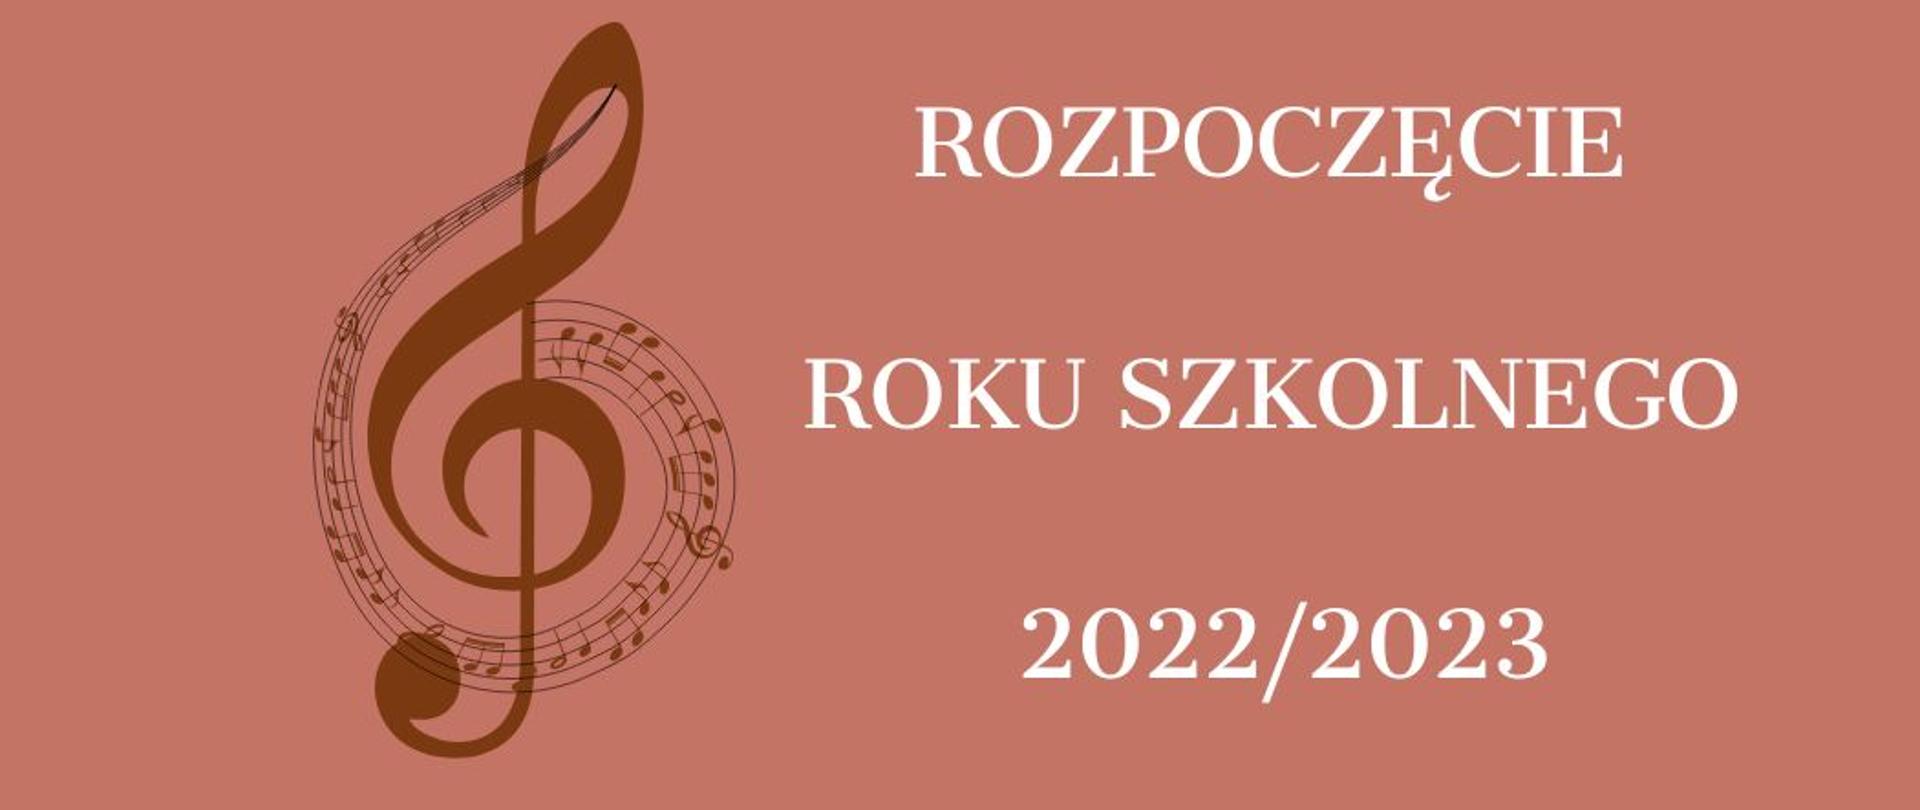 NA brązowym tle ozdobny klucz wiolinowy oraz napis ROZPOCZĘCIE ROKU SZKOLNEGO 2022/2023